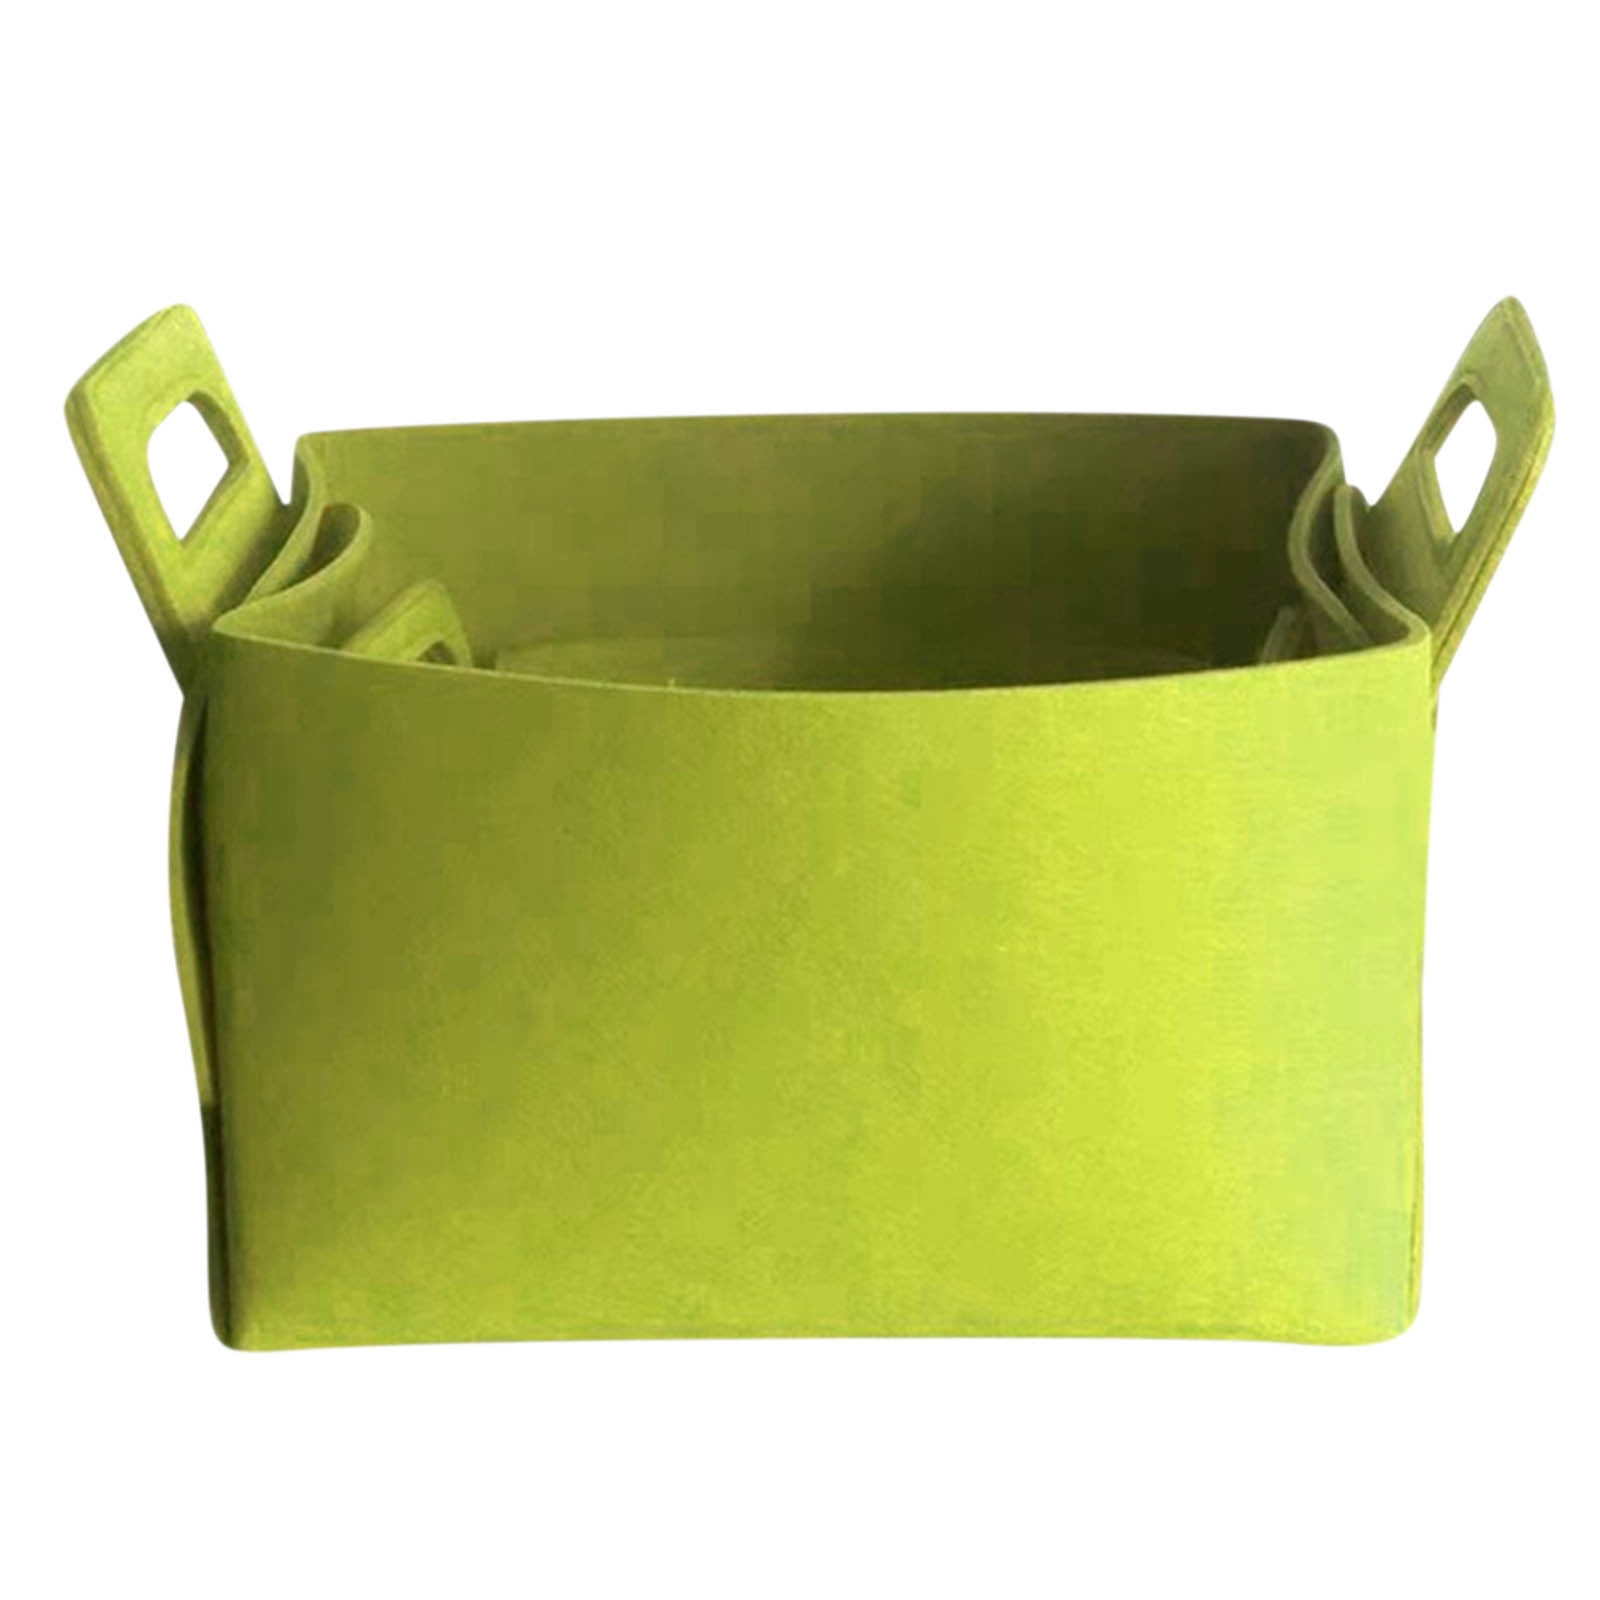 VOAVEKE Clothing Storage Box Folding FeltStorage Basket With Handle ...